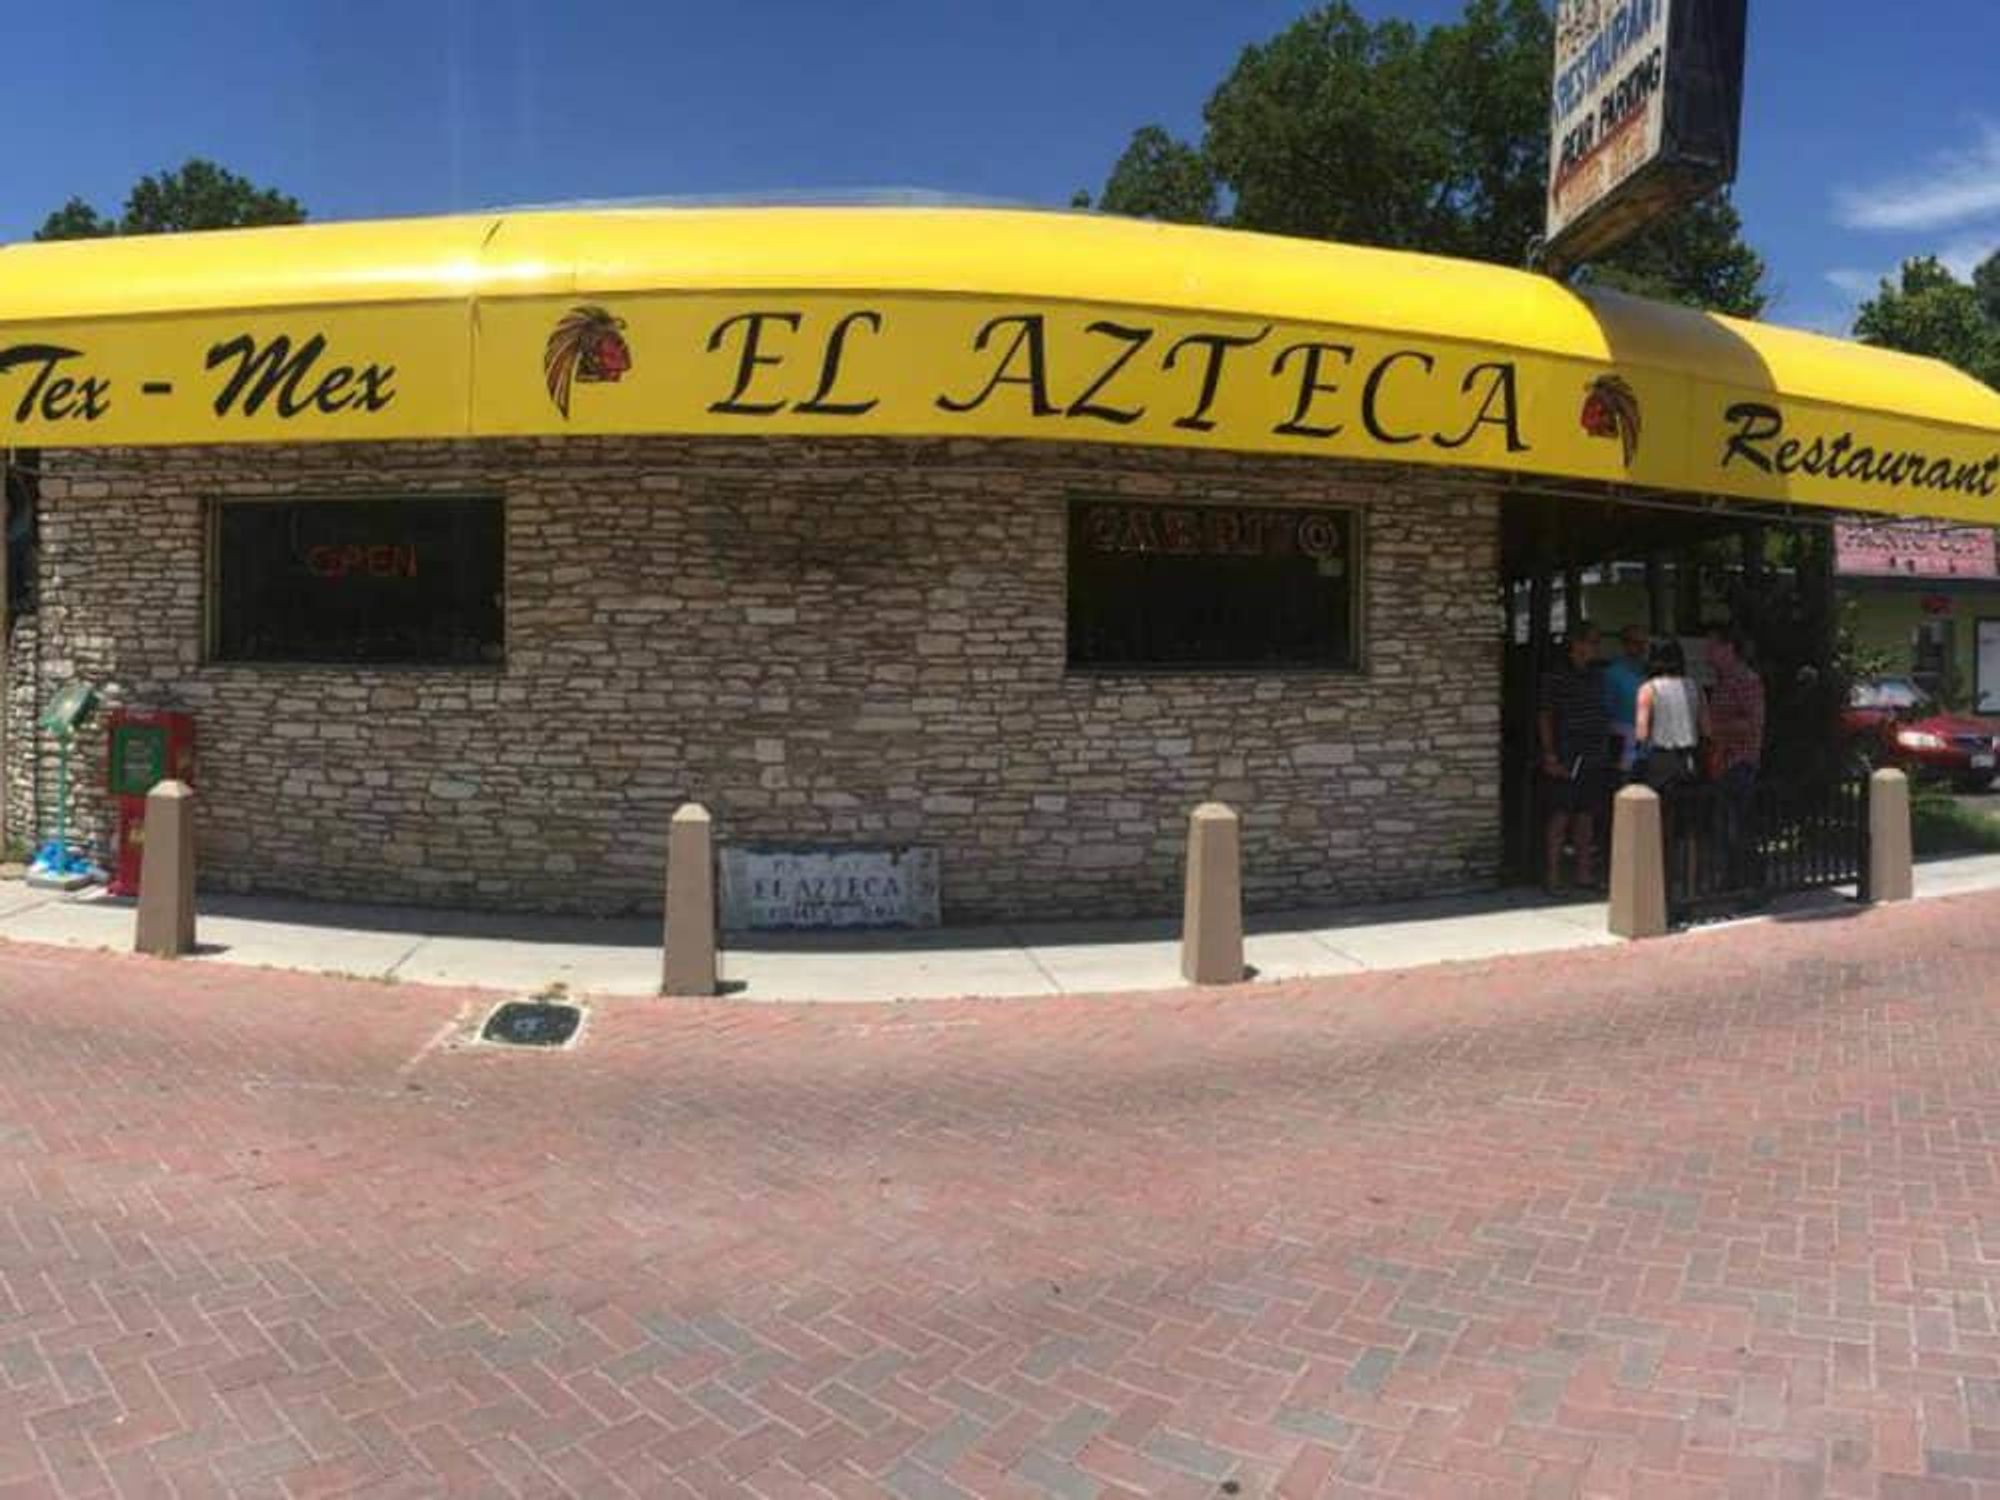 El Azteca Mexican restaurant East Austin